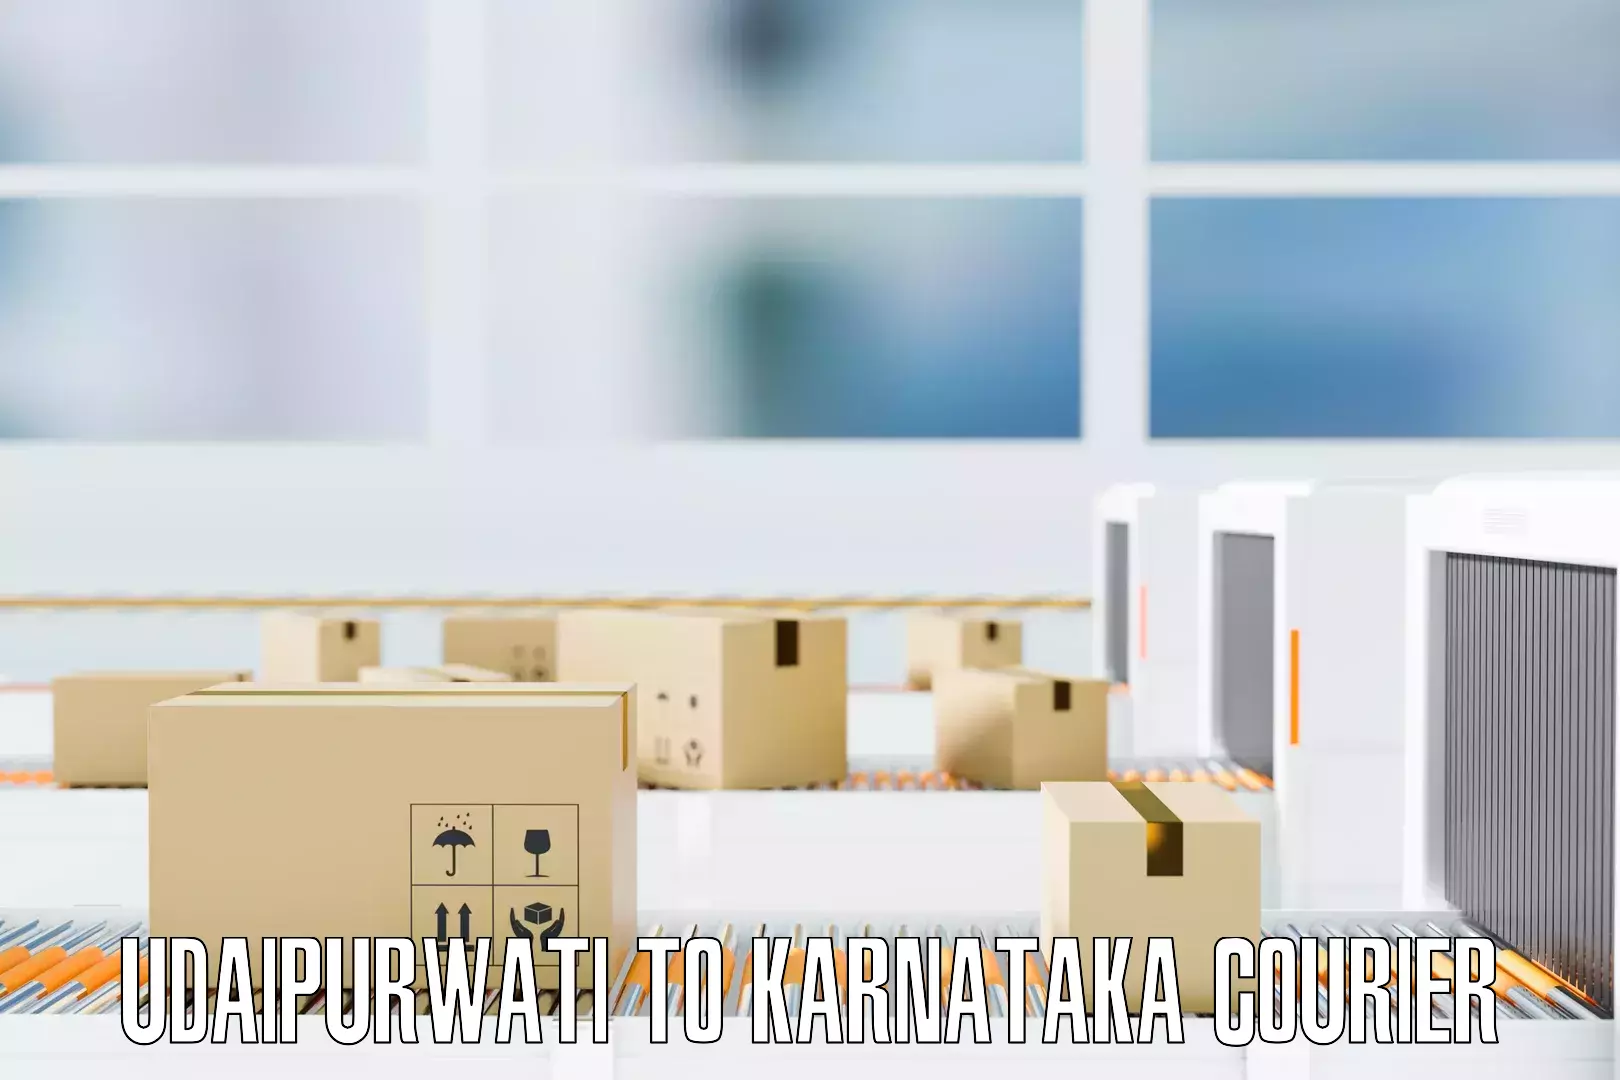 Efficient relocation services in Udaipurwati to Karnataka